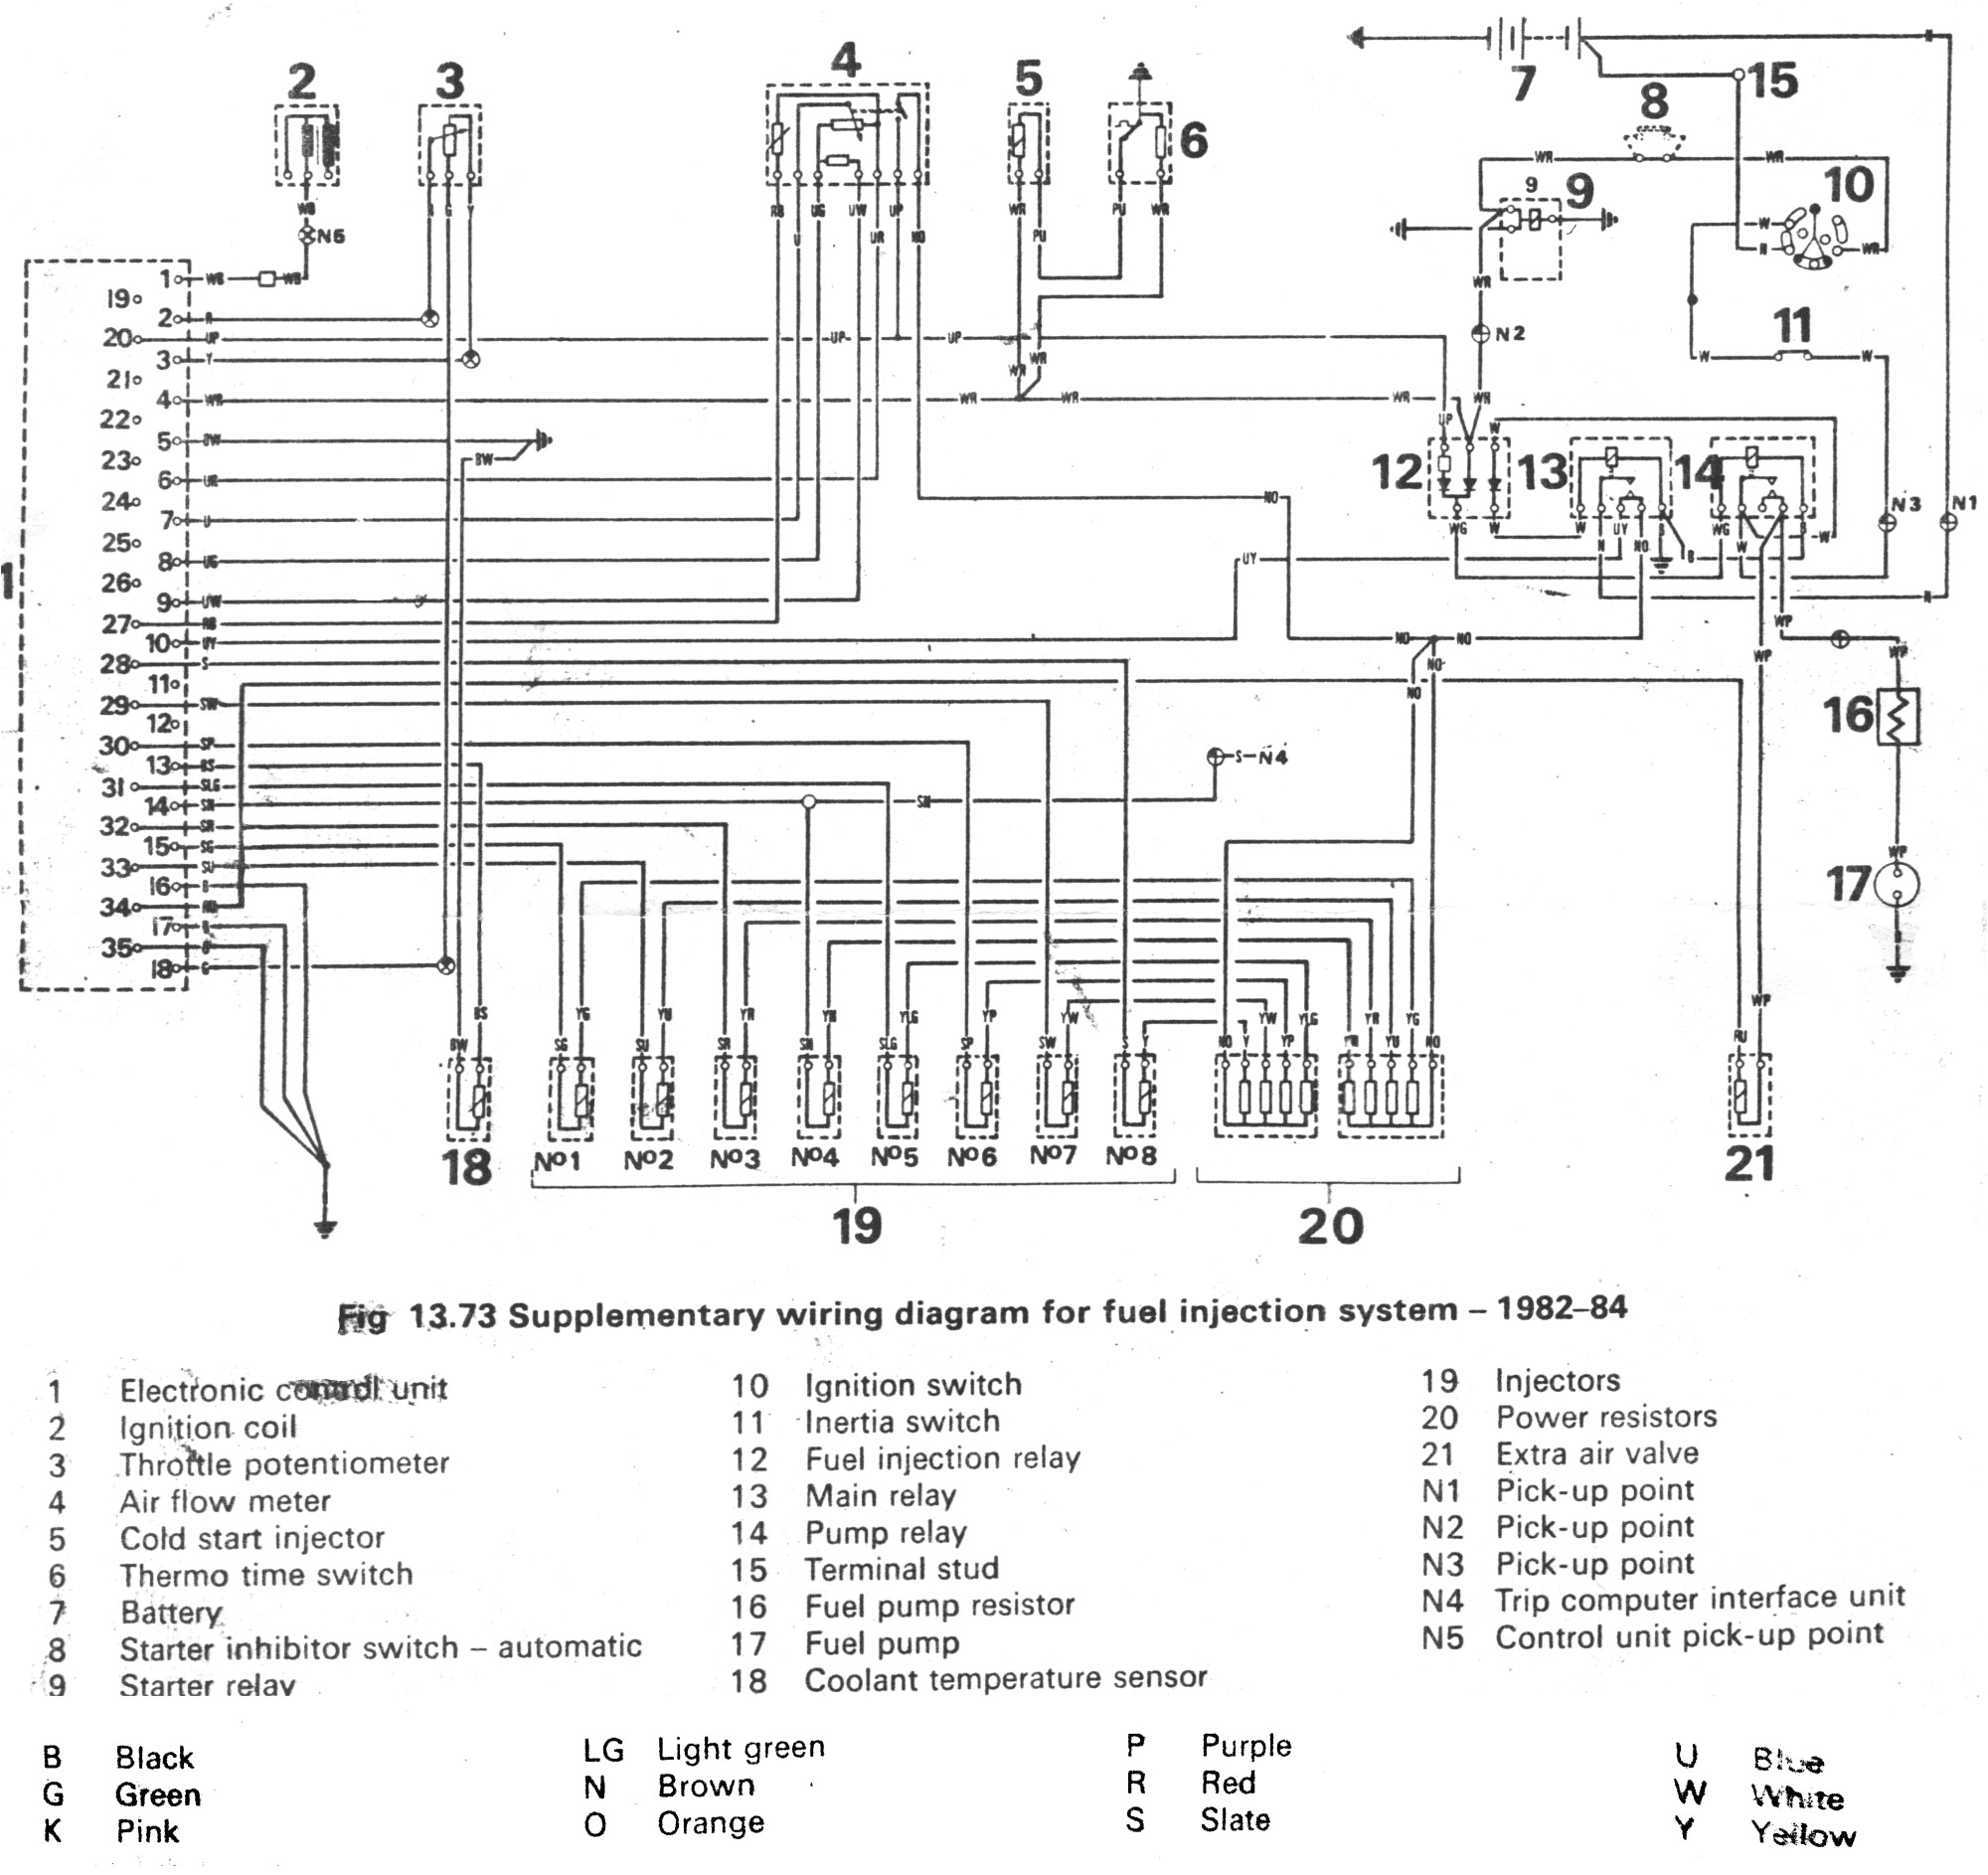 1988 range rover wiring diagram wiring diagram blog range rover classic 1988 wiring diagram 1988 range rover wiring diagram